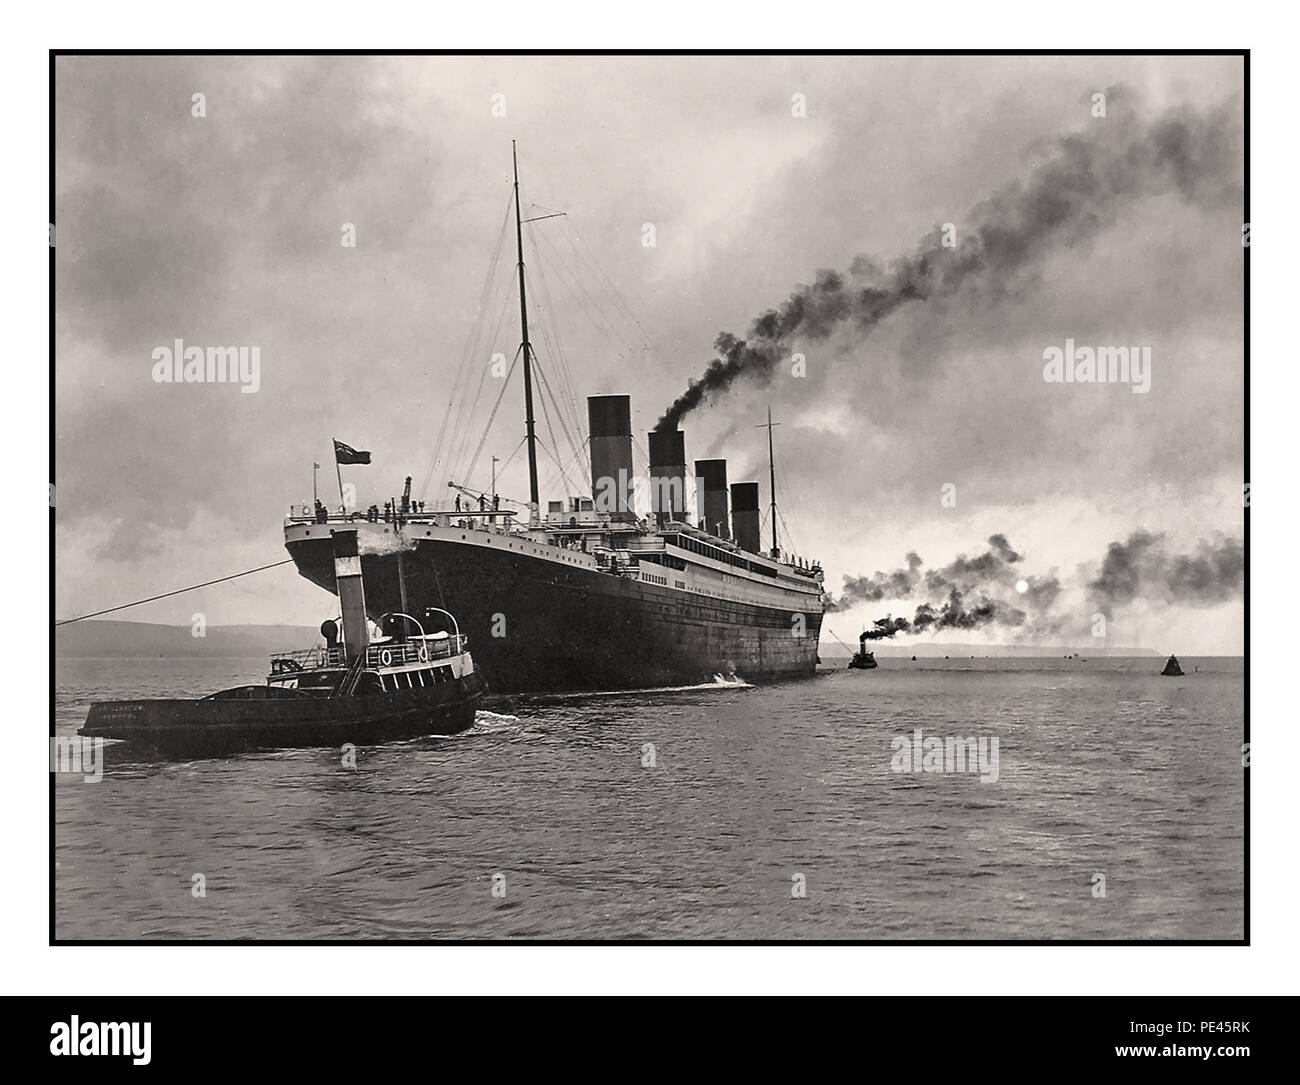 TITANIC 1912 RMS TITANIC VINTAGE HISTORISCH ERGREIFEND SEGELN düster evokative Sonnenaufgang Bild von RMS Titanic's Segeln See Tests, die um 6 UHR am Dienstag, 2. April 1912 begann, Nur zwei Tage, nachdem ihre Ausrüstung fertig war, und acht Tage, bevor sie Southampton auf ihrer schicksalhaften tragischen Jungfernfahrt verlassen sollte. Dieses eindrucksvolle Foto wurde sorgfältig restauriert, um seine ursprüngliche Wirkung und Qualität zu erhalten. Stockfoto